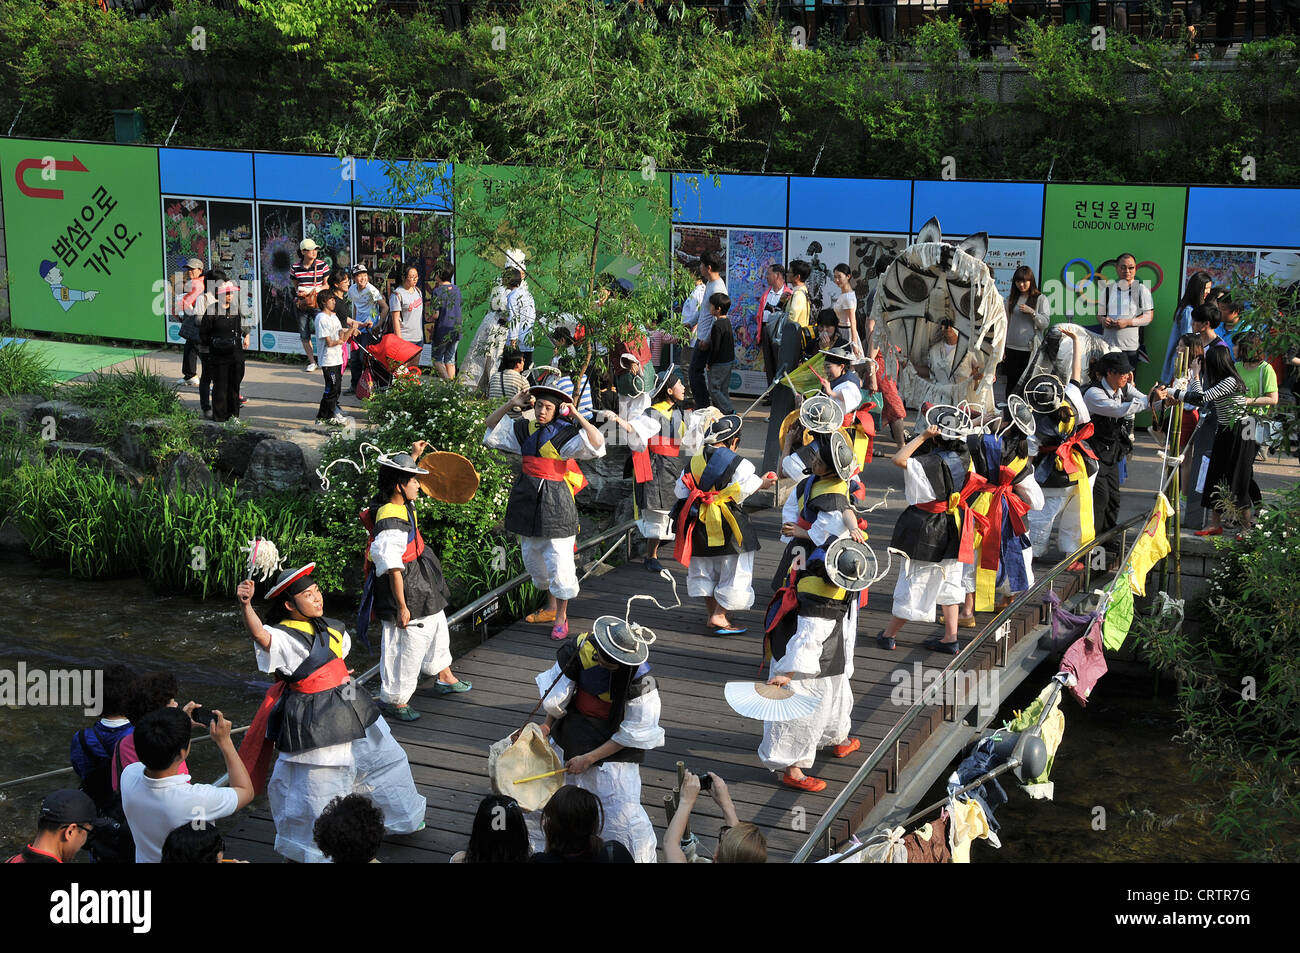 Folklore-traditionelle Tänze Cheonggyecheon Fluss Seoul Südkorea Asien Stockfoto